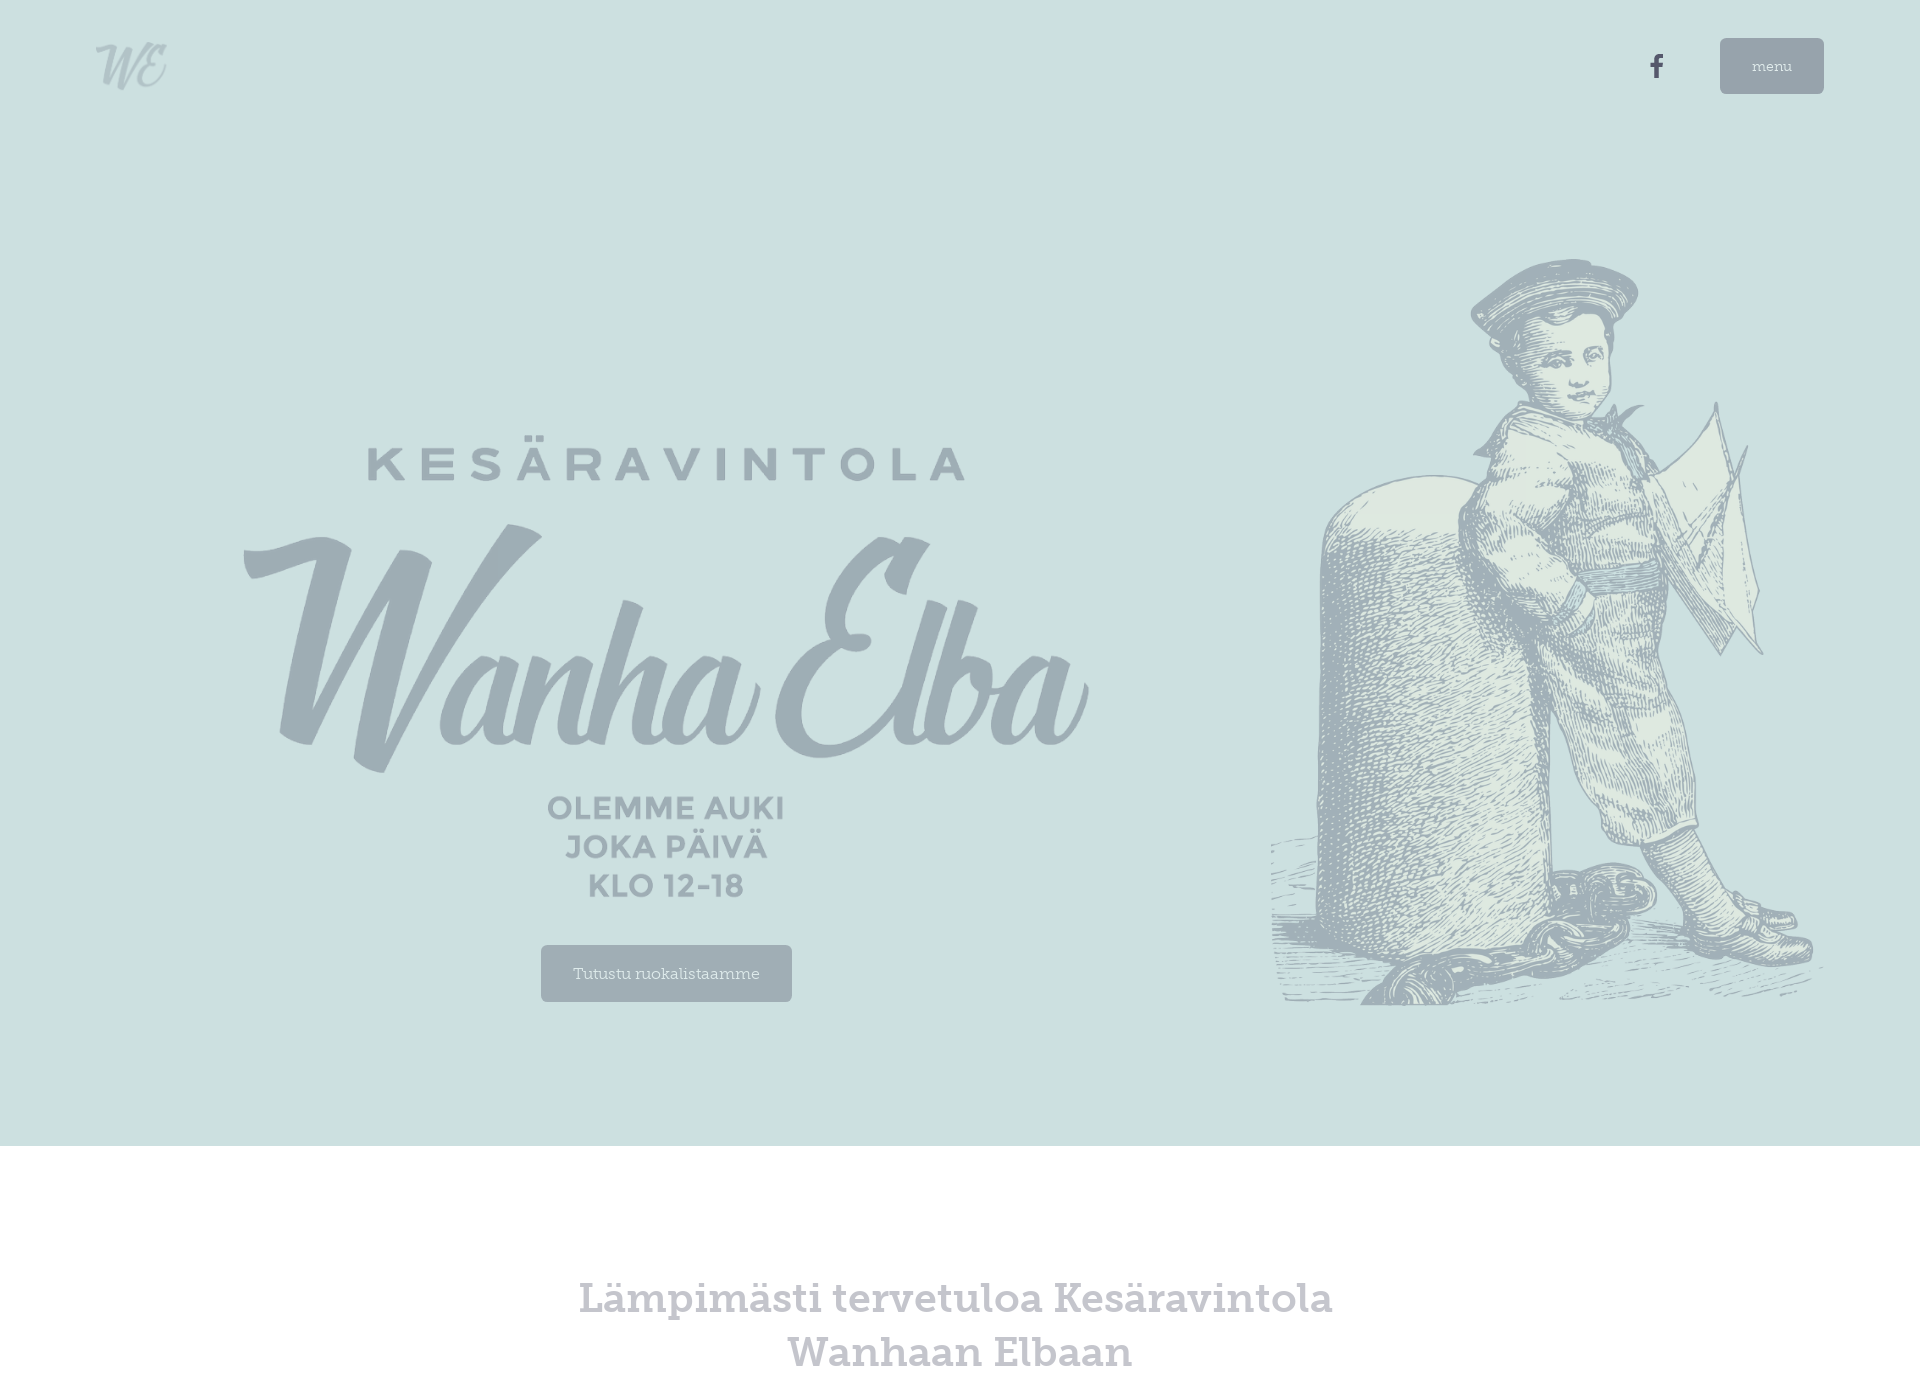 Näyttökuva ravintolawanhaelba.fi